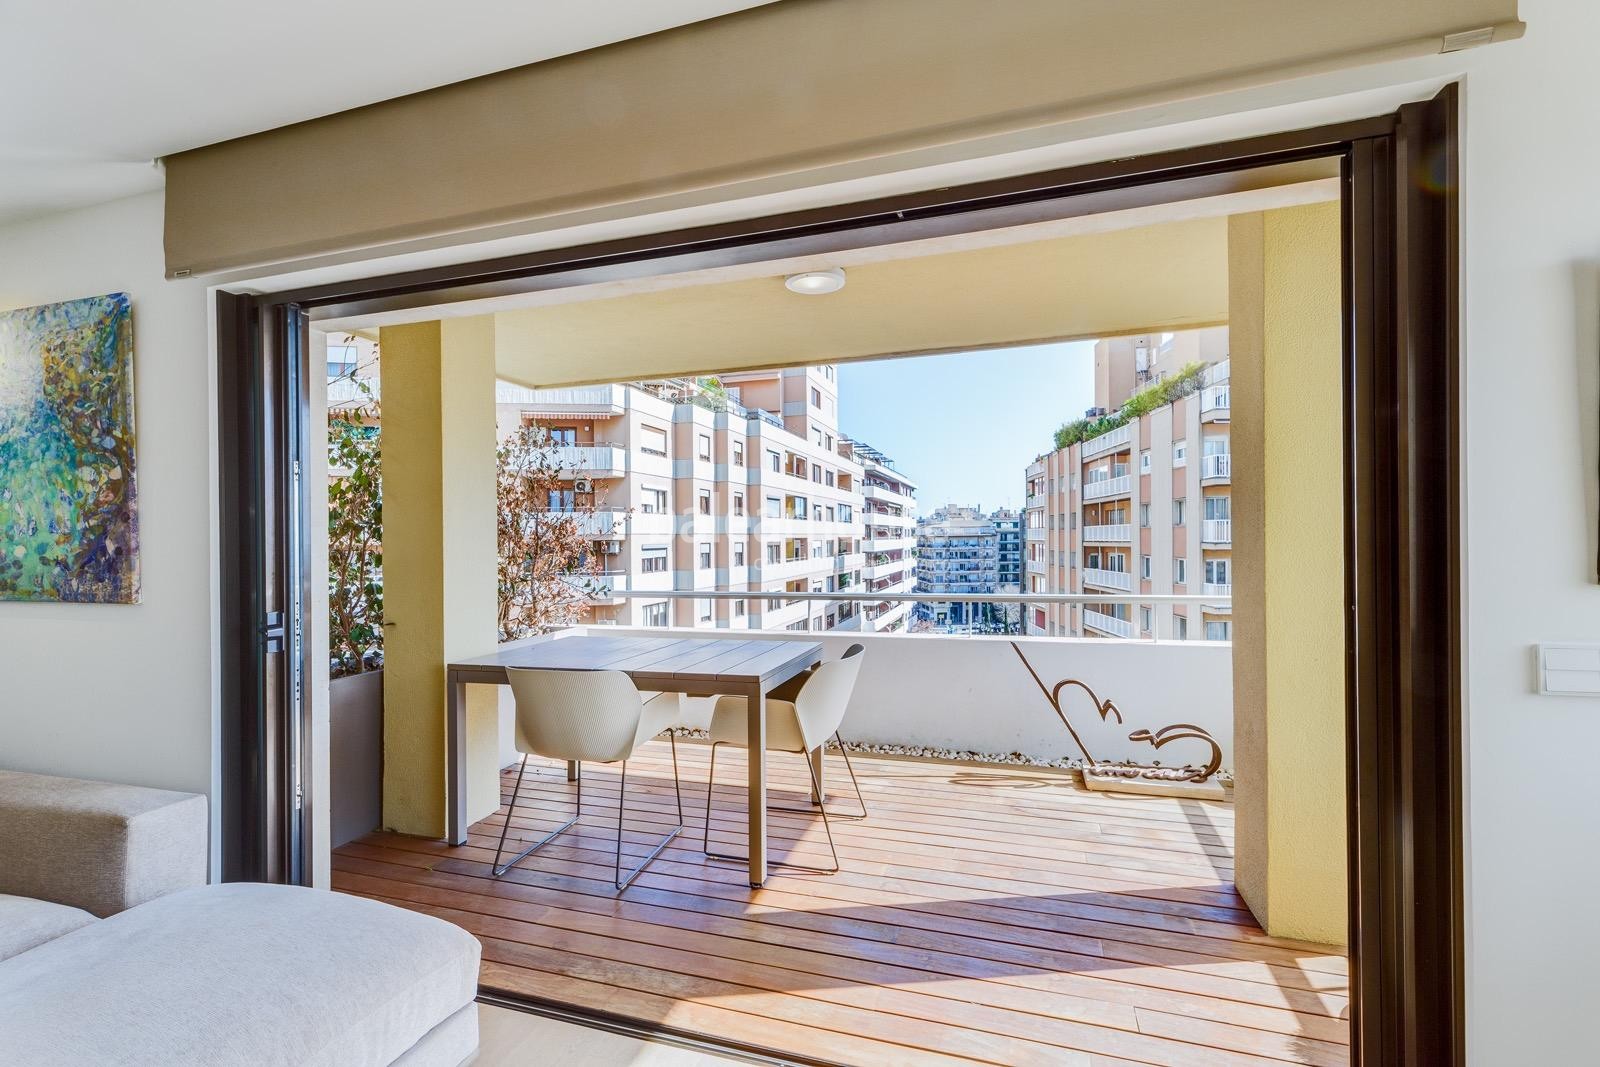 Wunderschöne große renovierte Wohnung im Zentrum von Palma mit modernem Design und hoher Qualität.